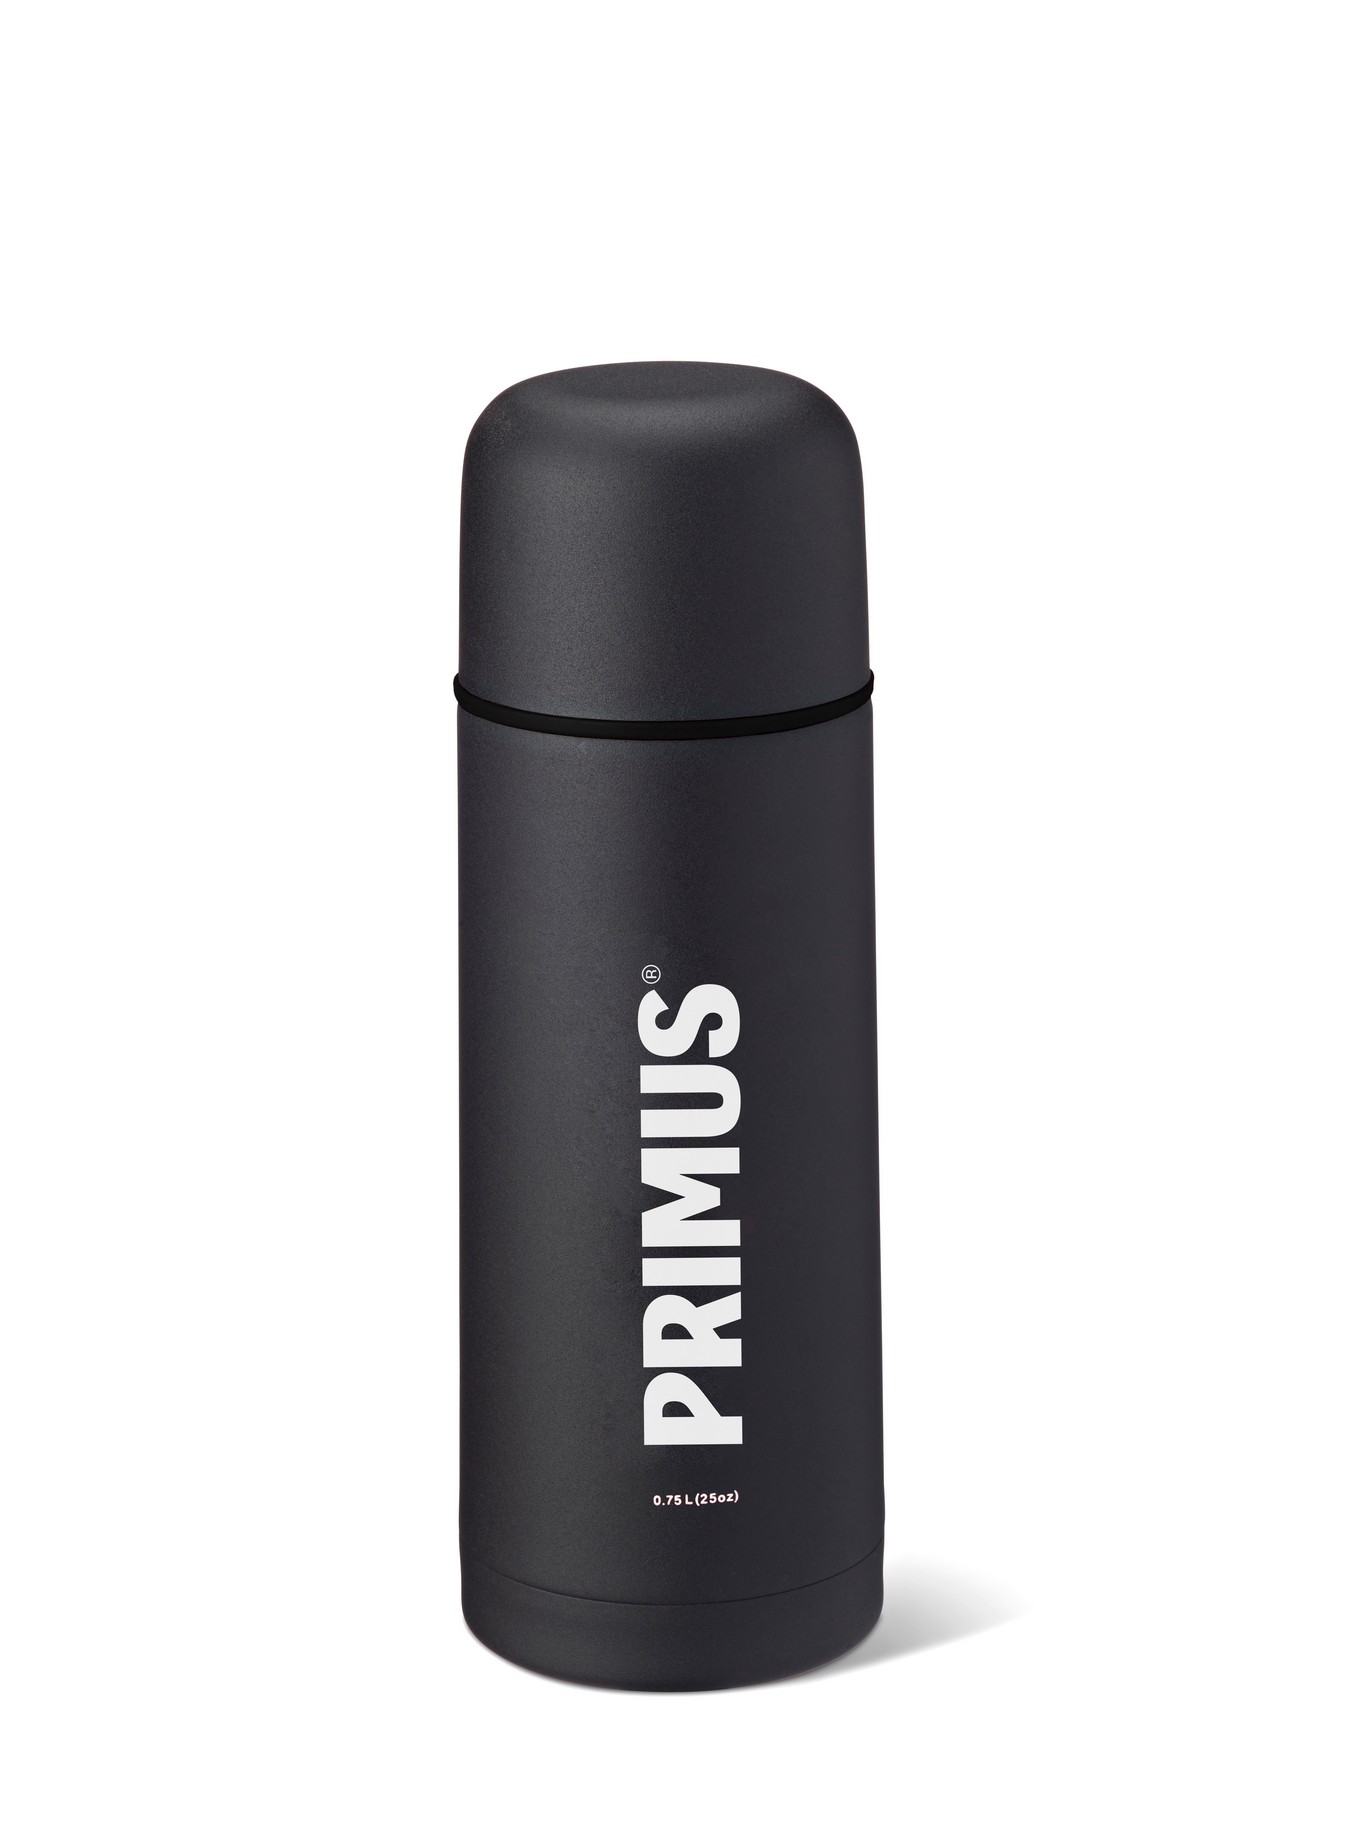 Primus "Vacuum Bottle" - 0.75 Liter